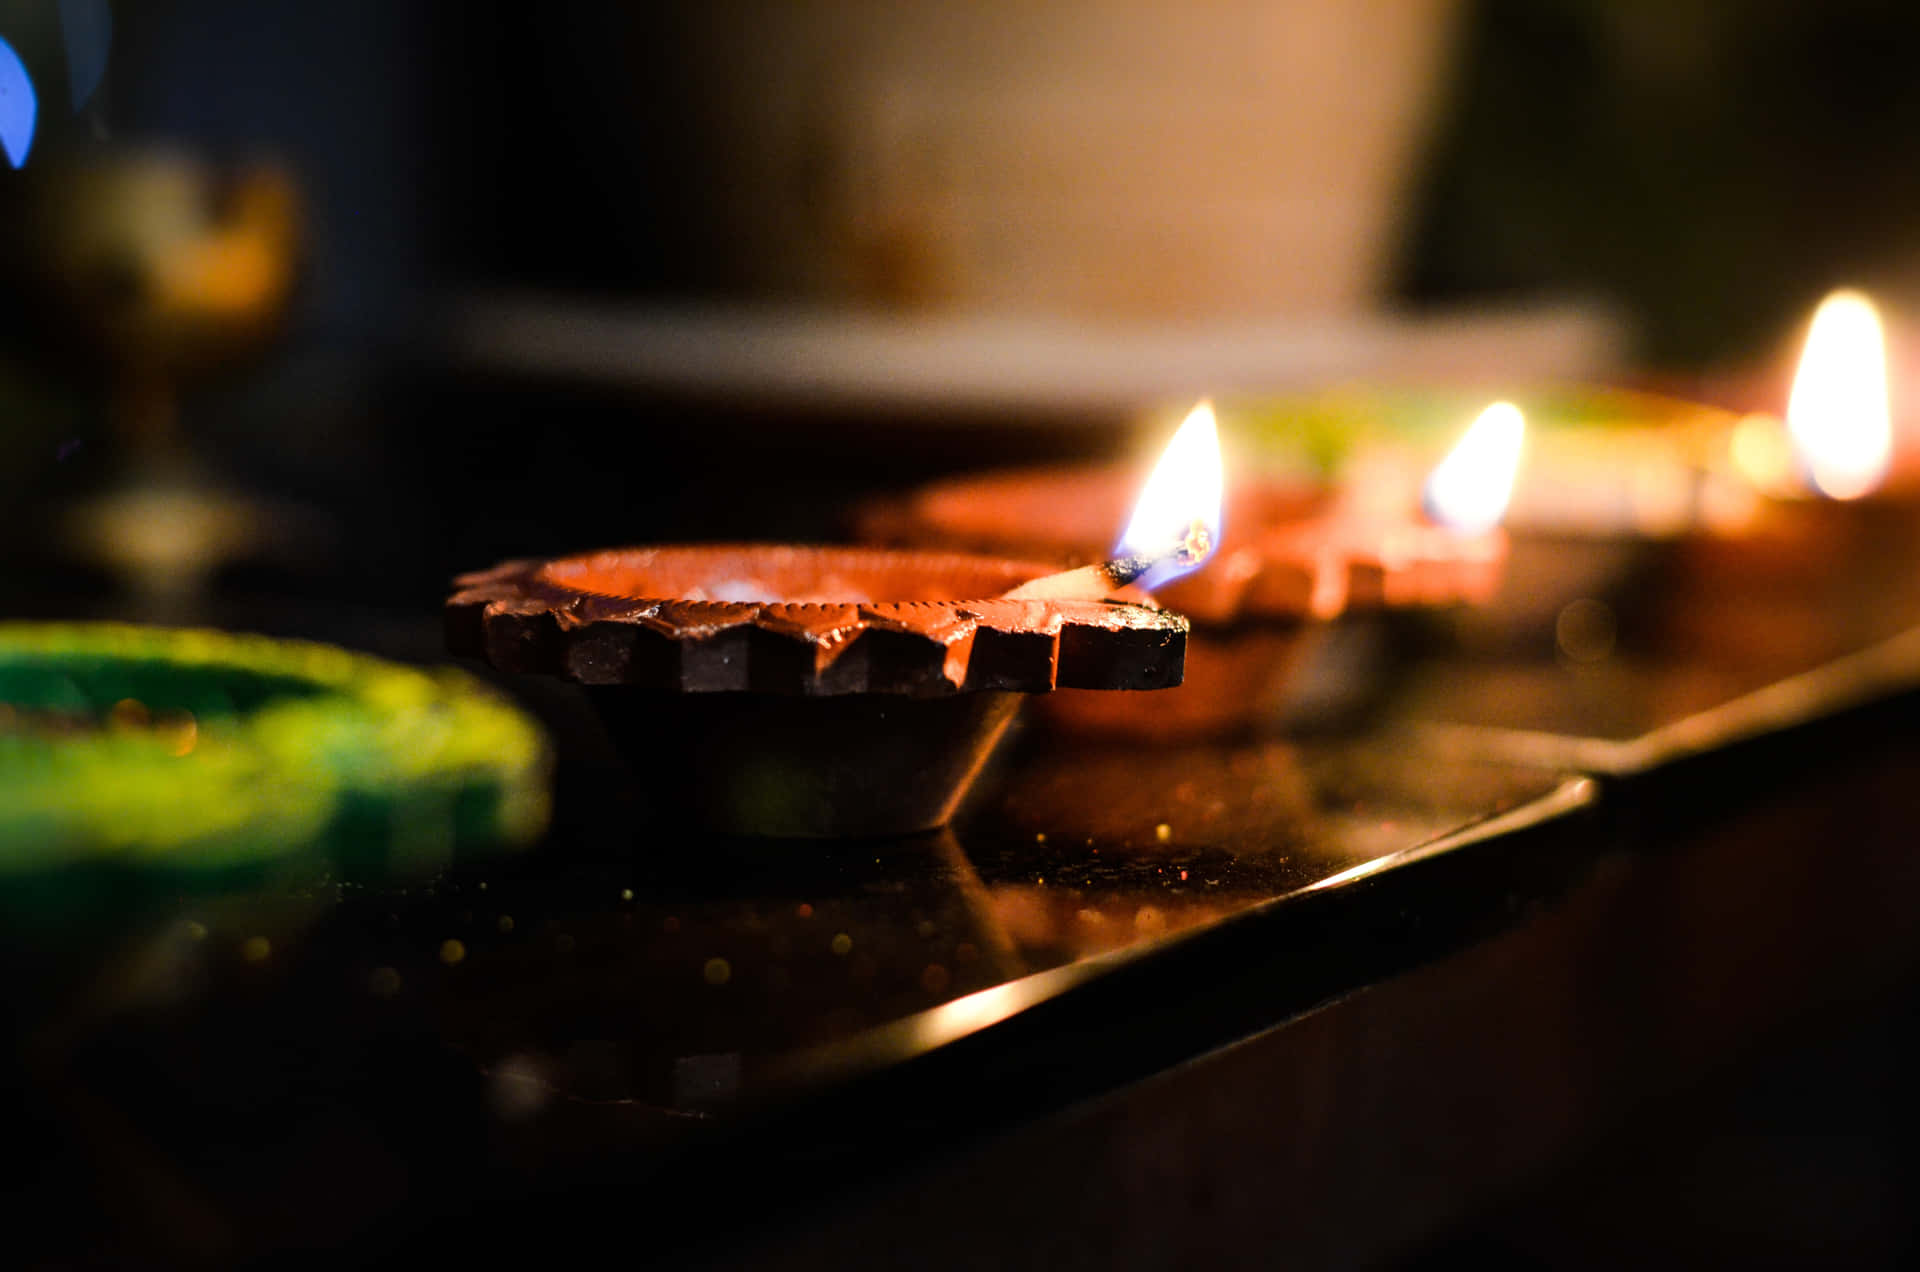 Hintergrundmit Einer Reihe Von Brennenden Kerzen Für Diwali